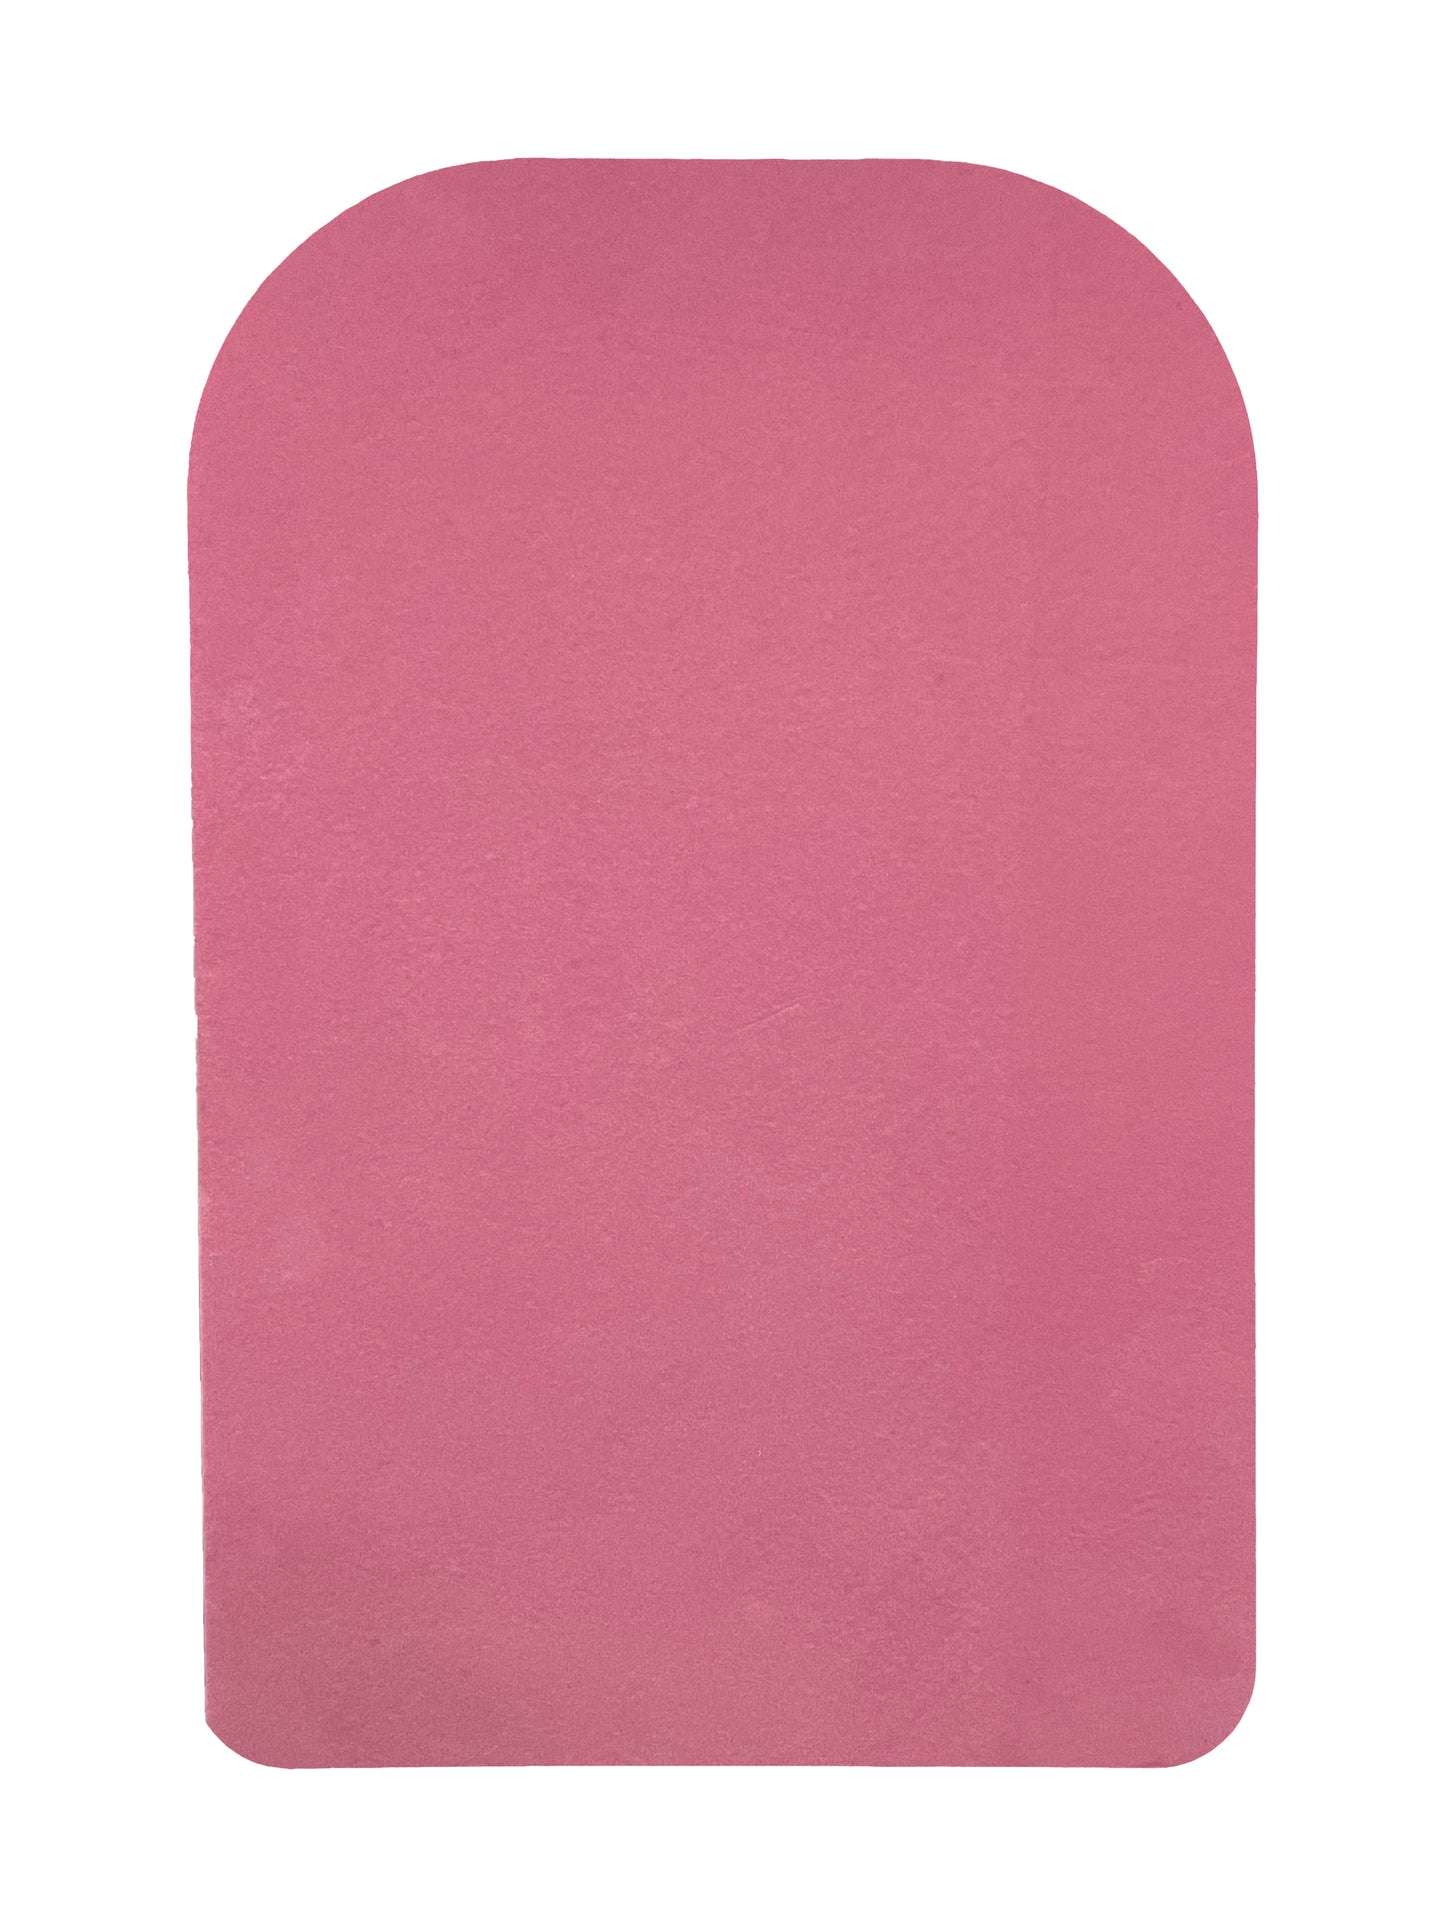 Echo Emblem, Flocked Velvet Foam Insert, Pink 1 cm (In Stock)